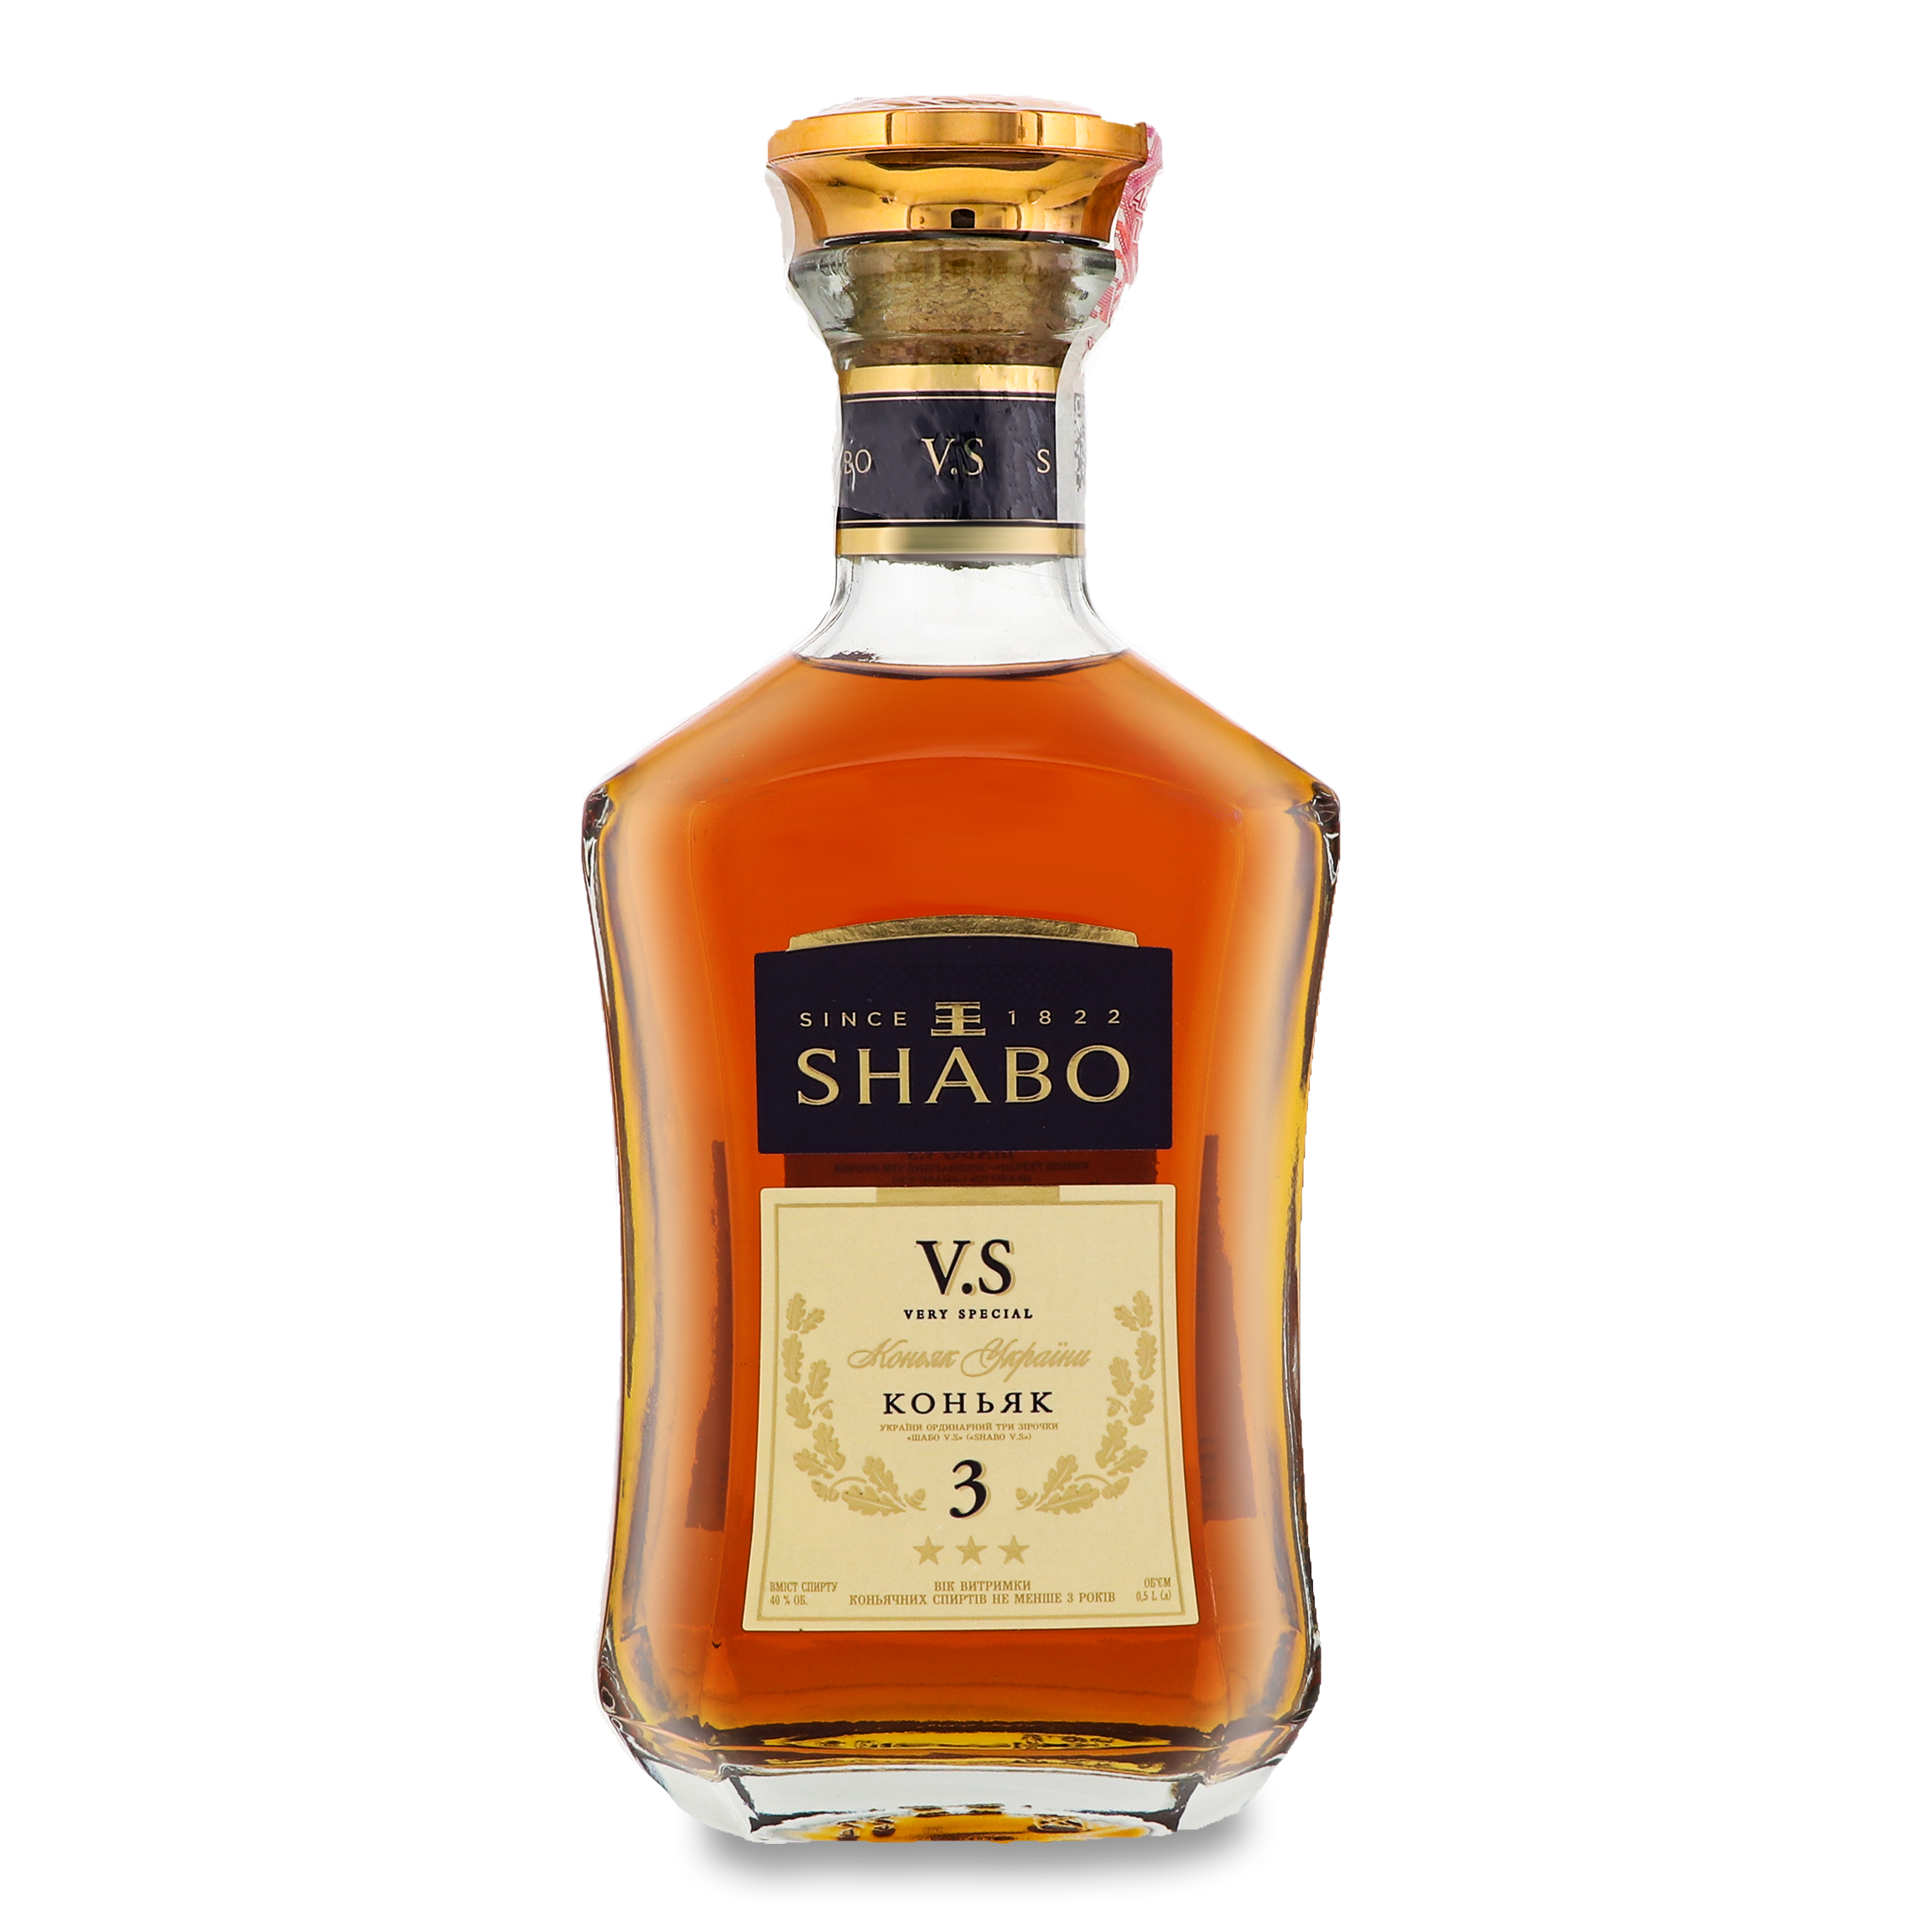 Shabo V.S. 3 stars cognac 40% 0,5l